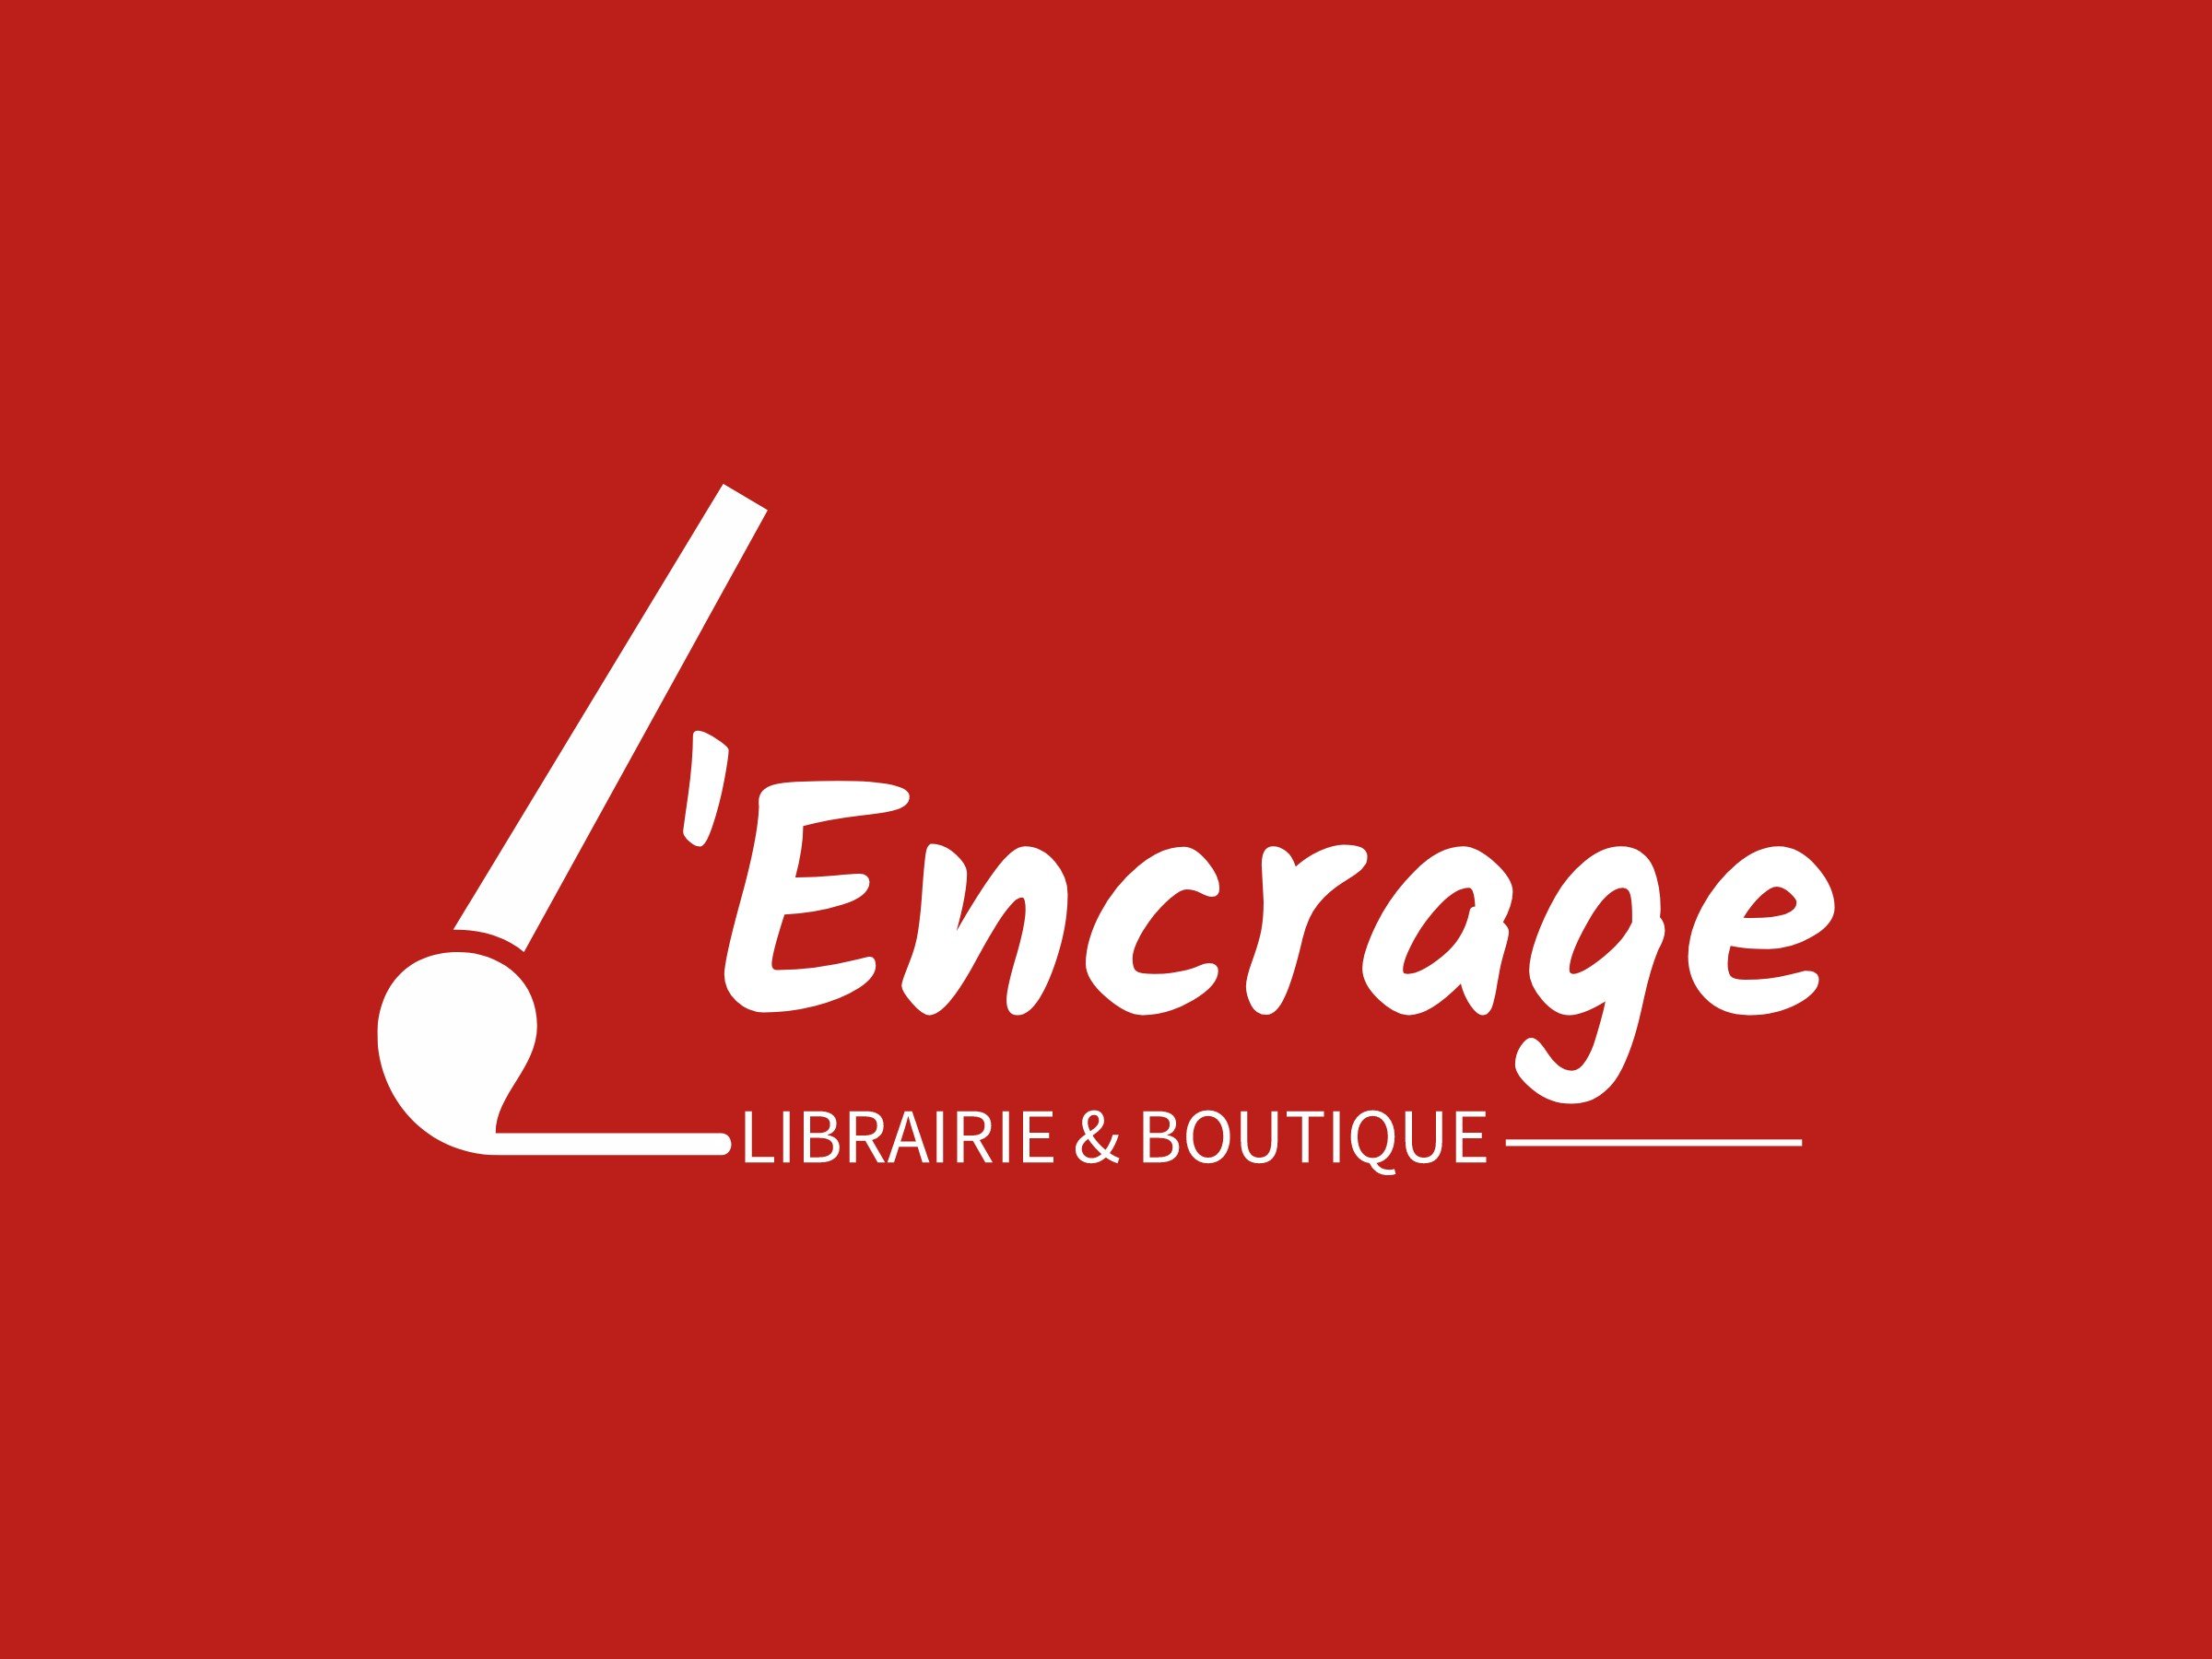 'Encrage logo design